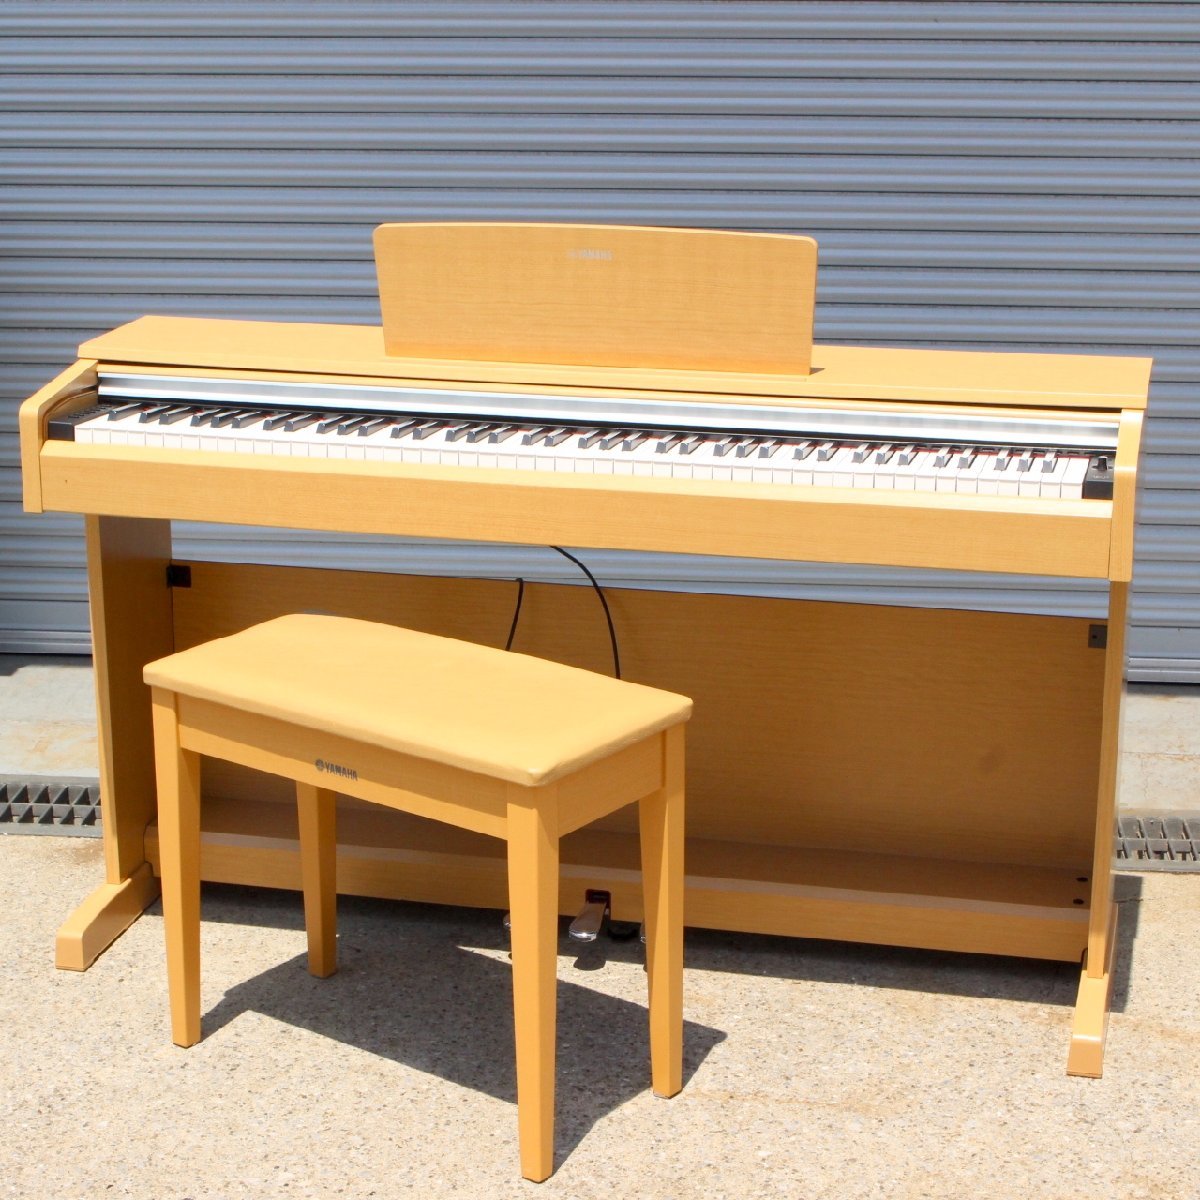 川崎市幸区にて ヤマハ 電子ピアノ YDP-142C ARIUS 2015年製 を出張買取させて頂きました。